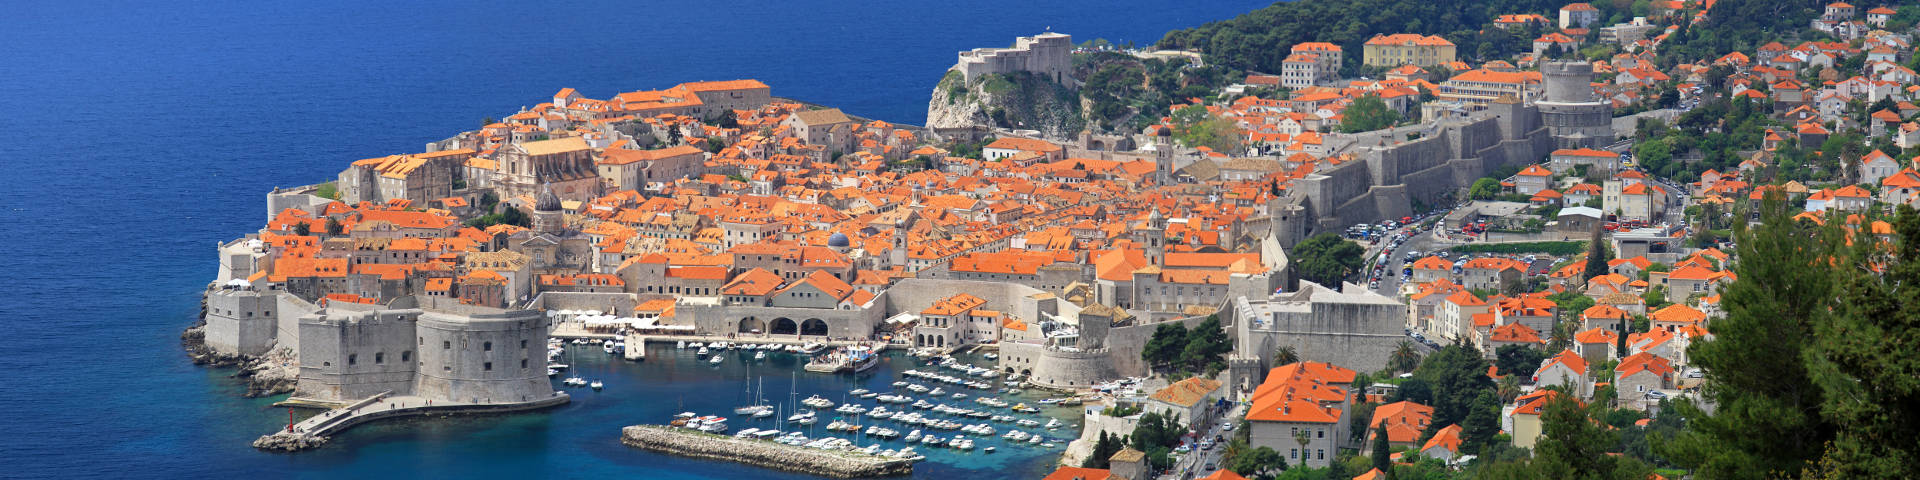 Dubrovnik cityscape hero banner